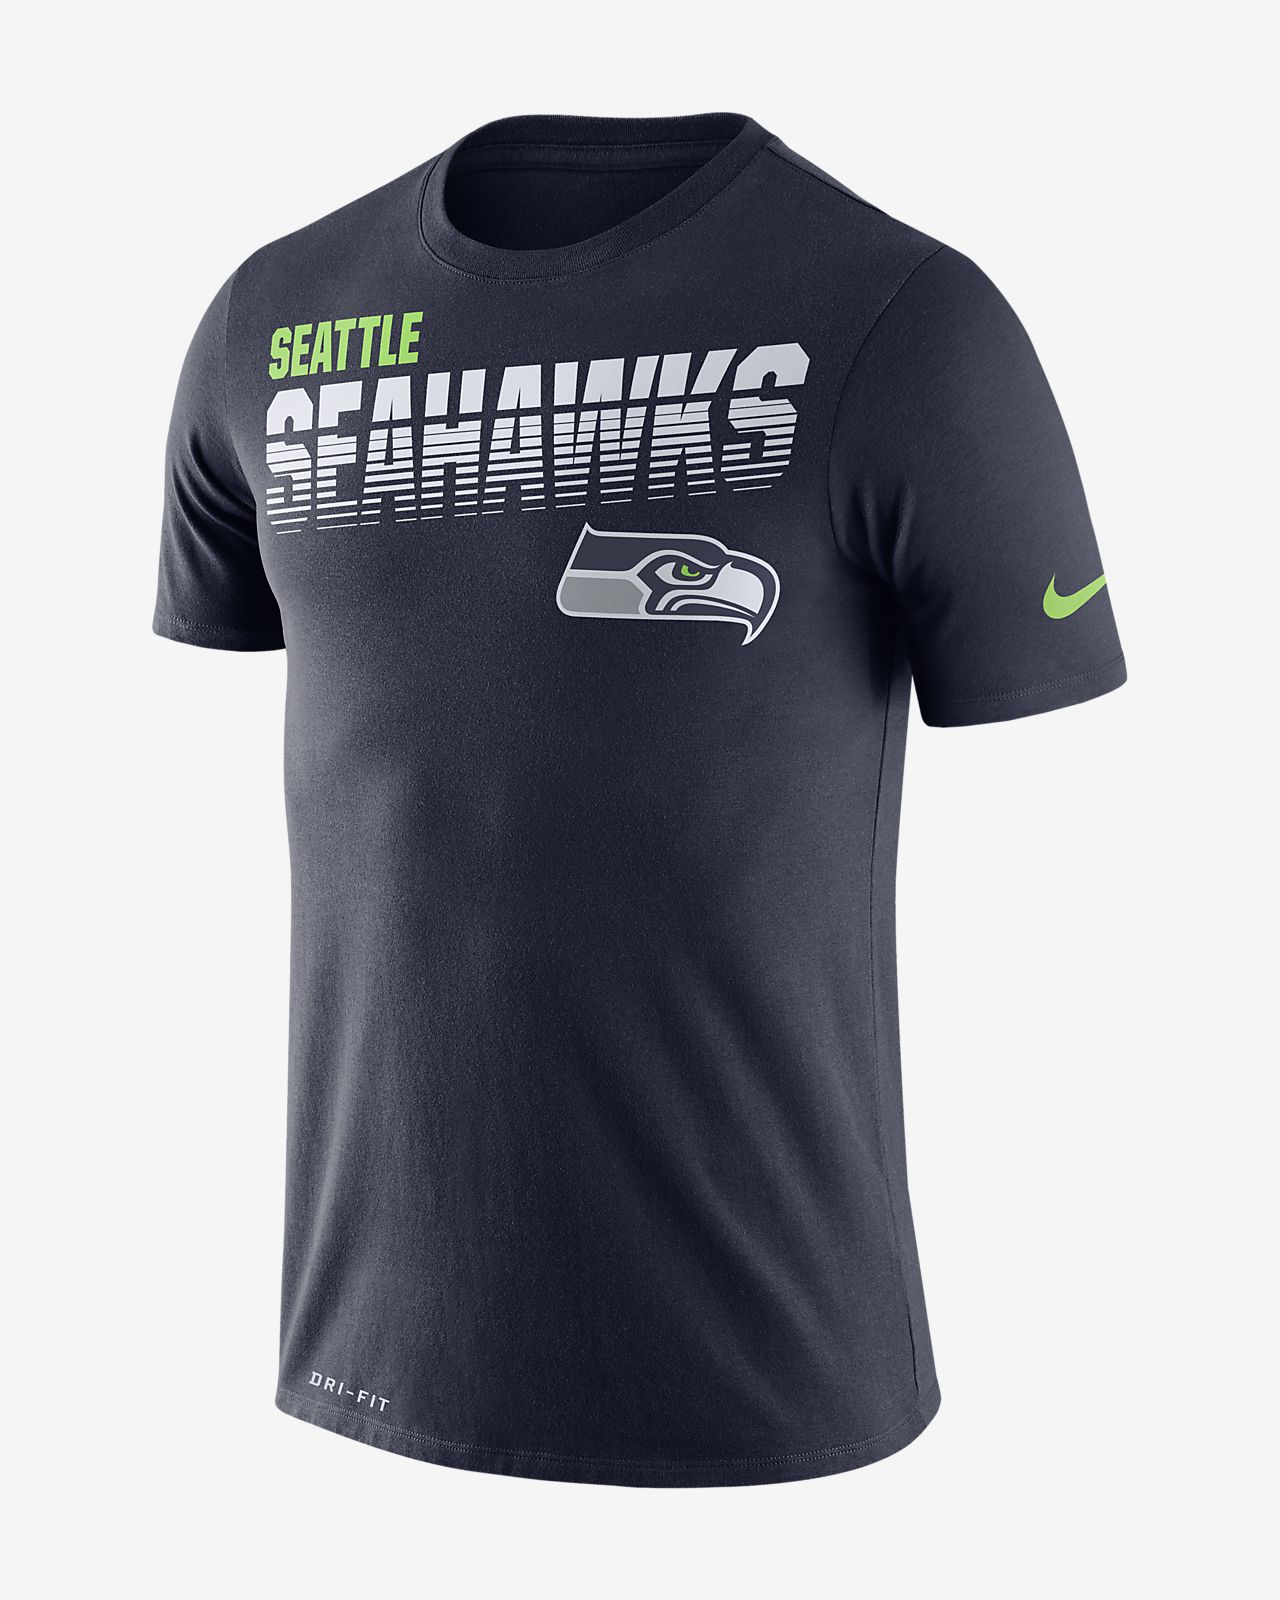 seahawks shirts on sale